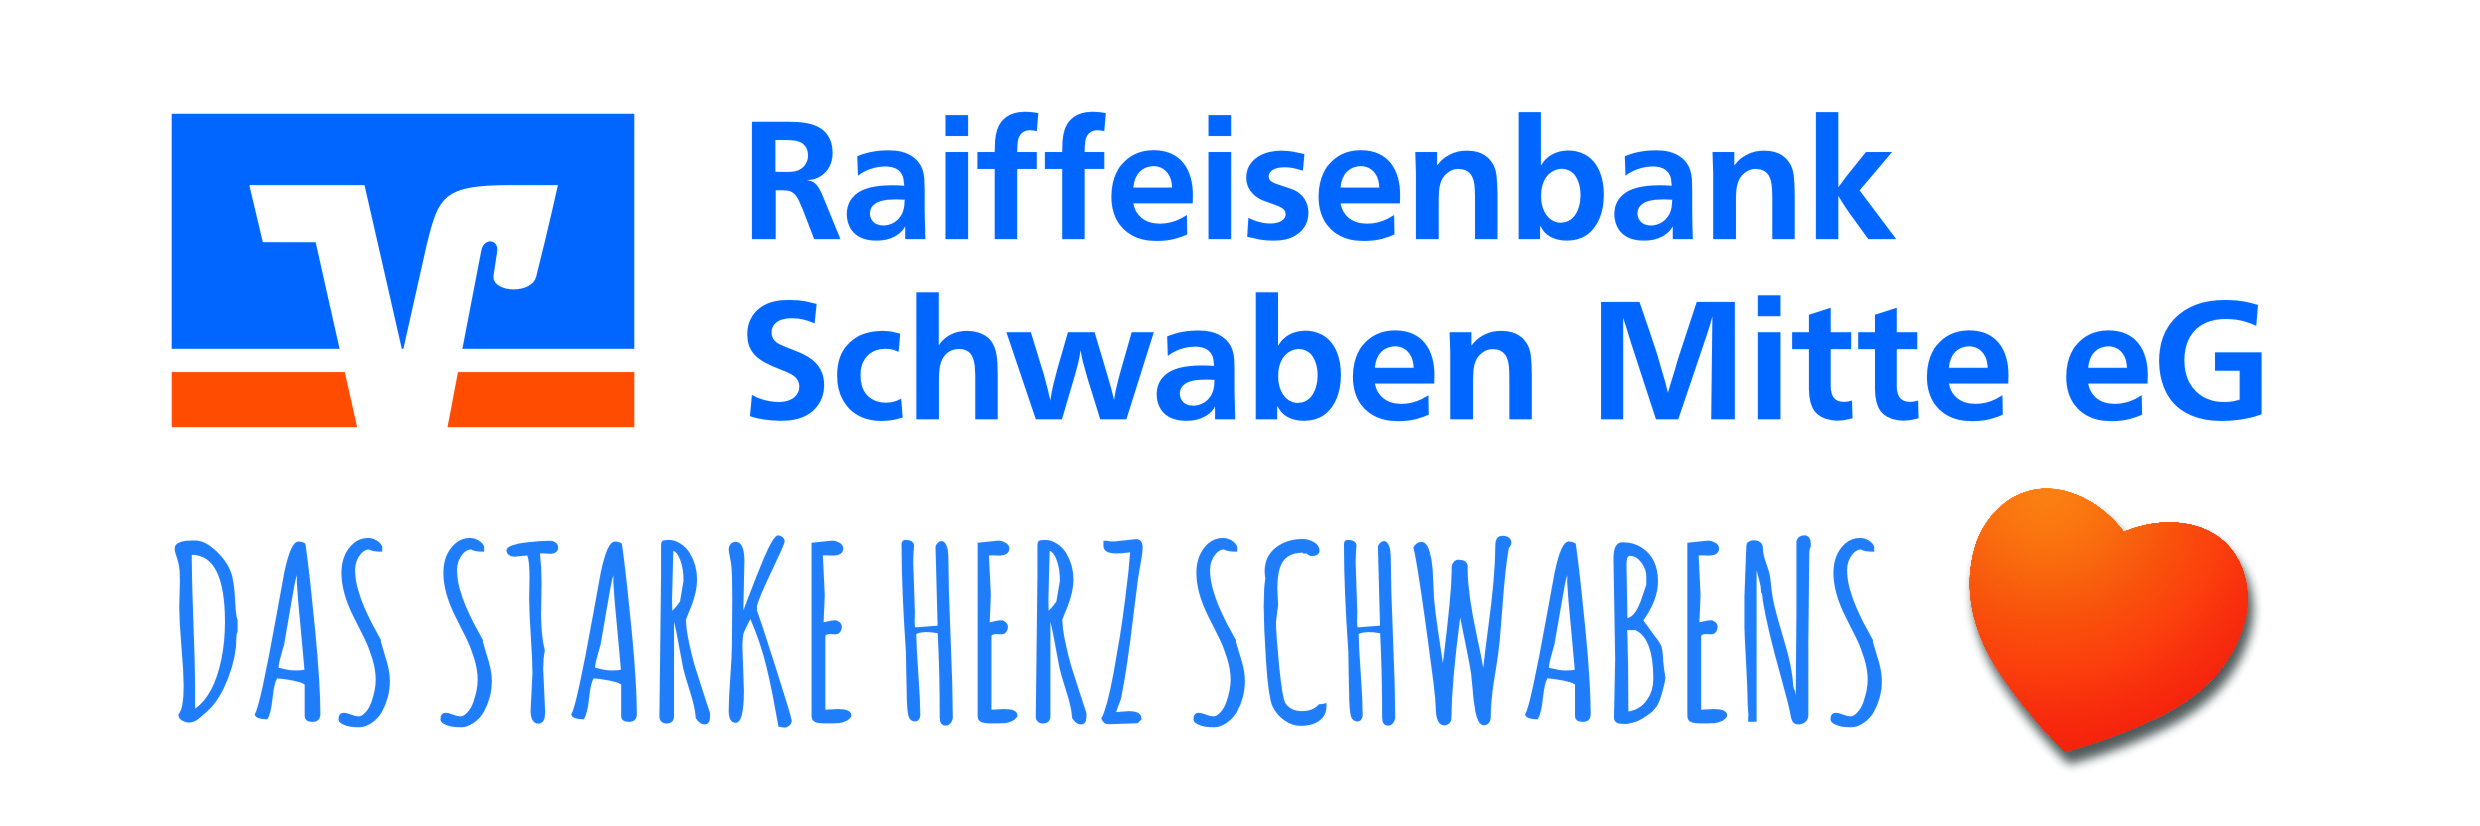 Raiffeisenbank Schwaben Mitte eG Logo